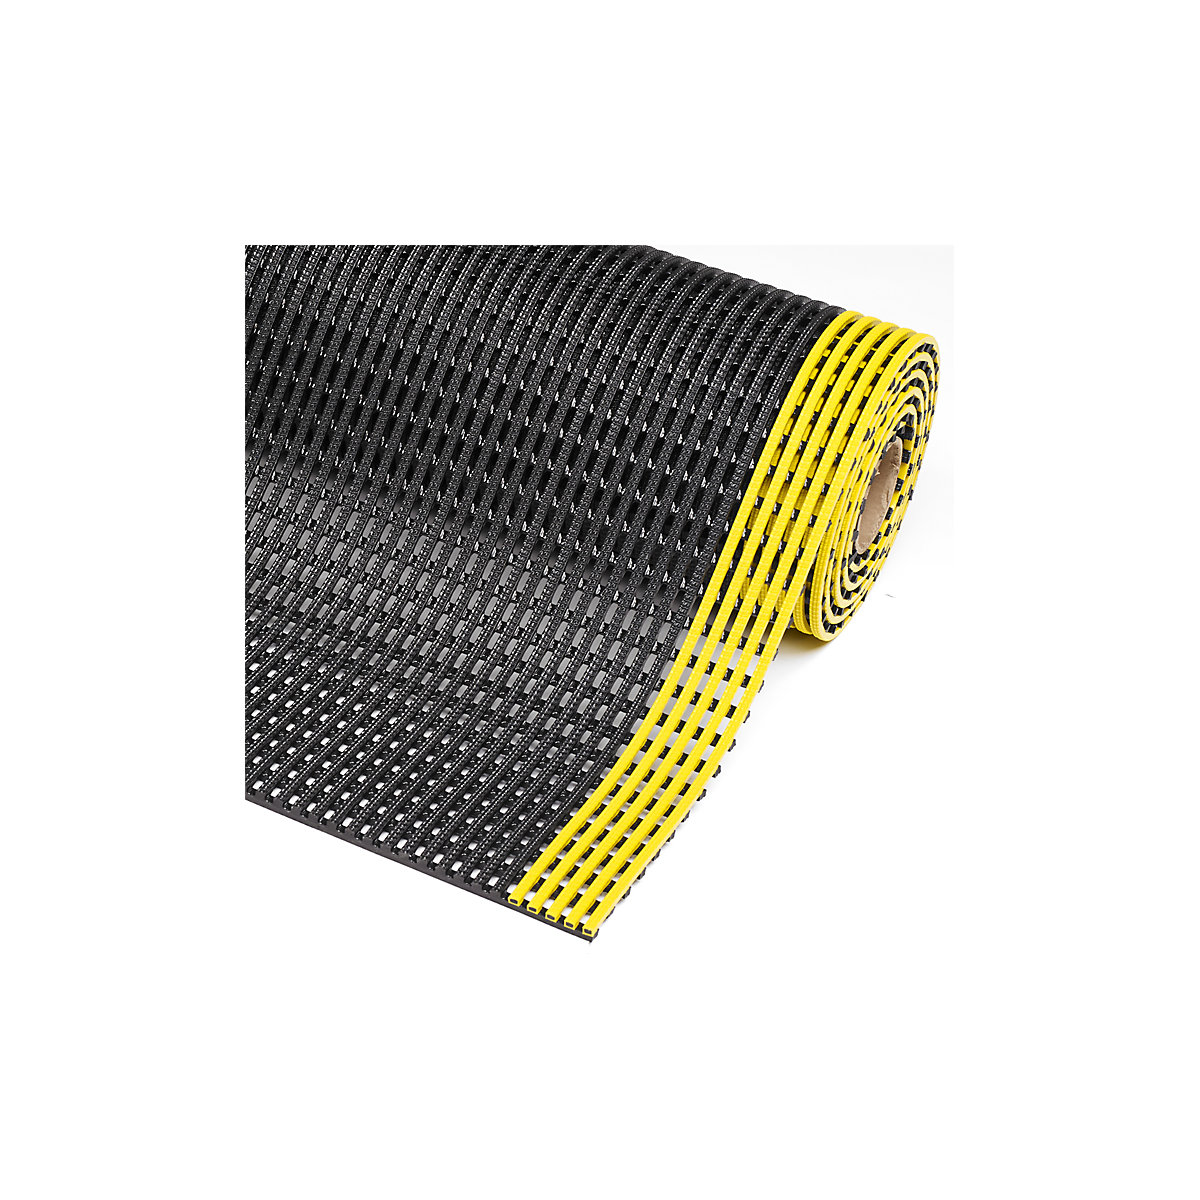 Mrežasta prostirka Flexdek™ – NOTRAX, širina 600 mm, po dužnom metru, u crnoj/žutoj boji-3